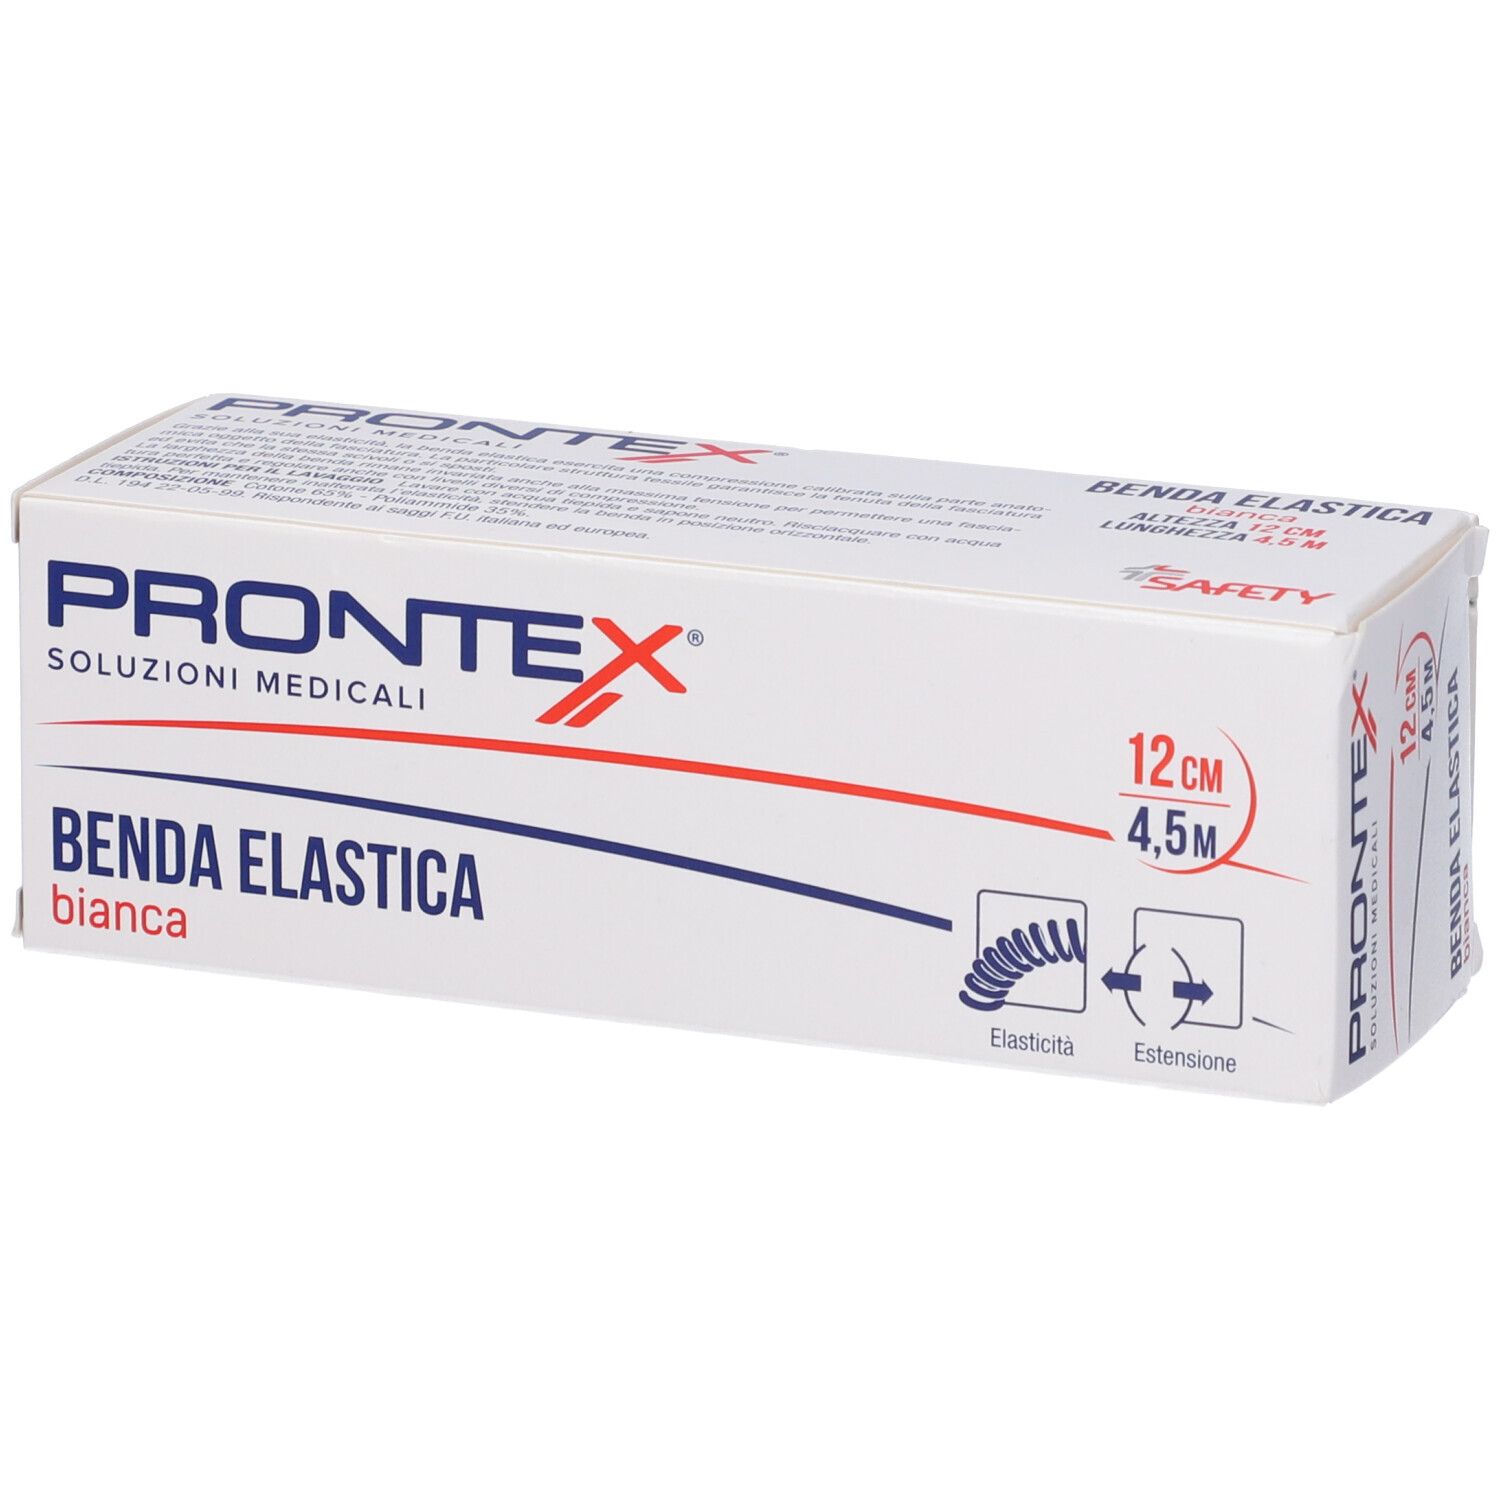 Image of Benda Prontex El Bi 450X12Cm